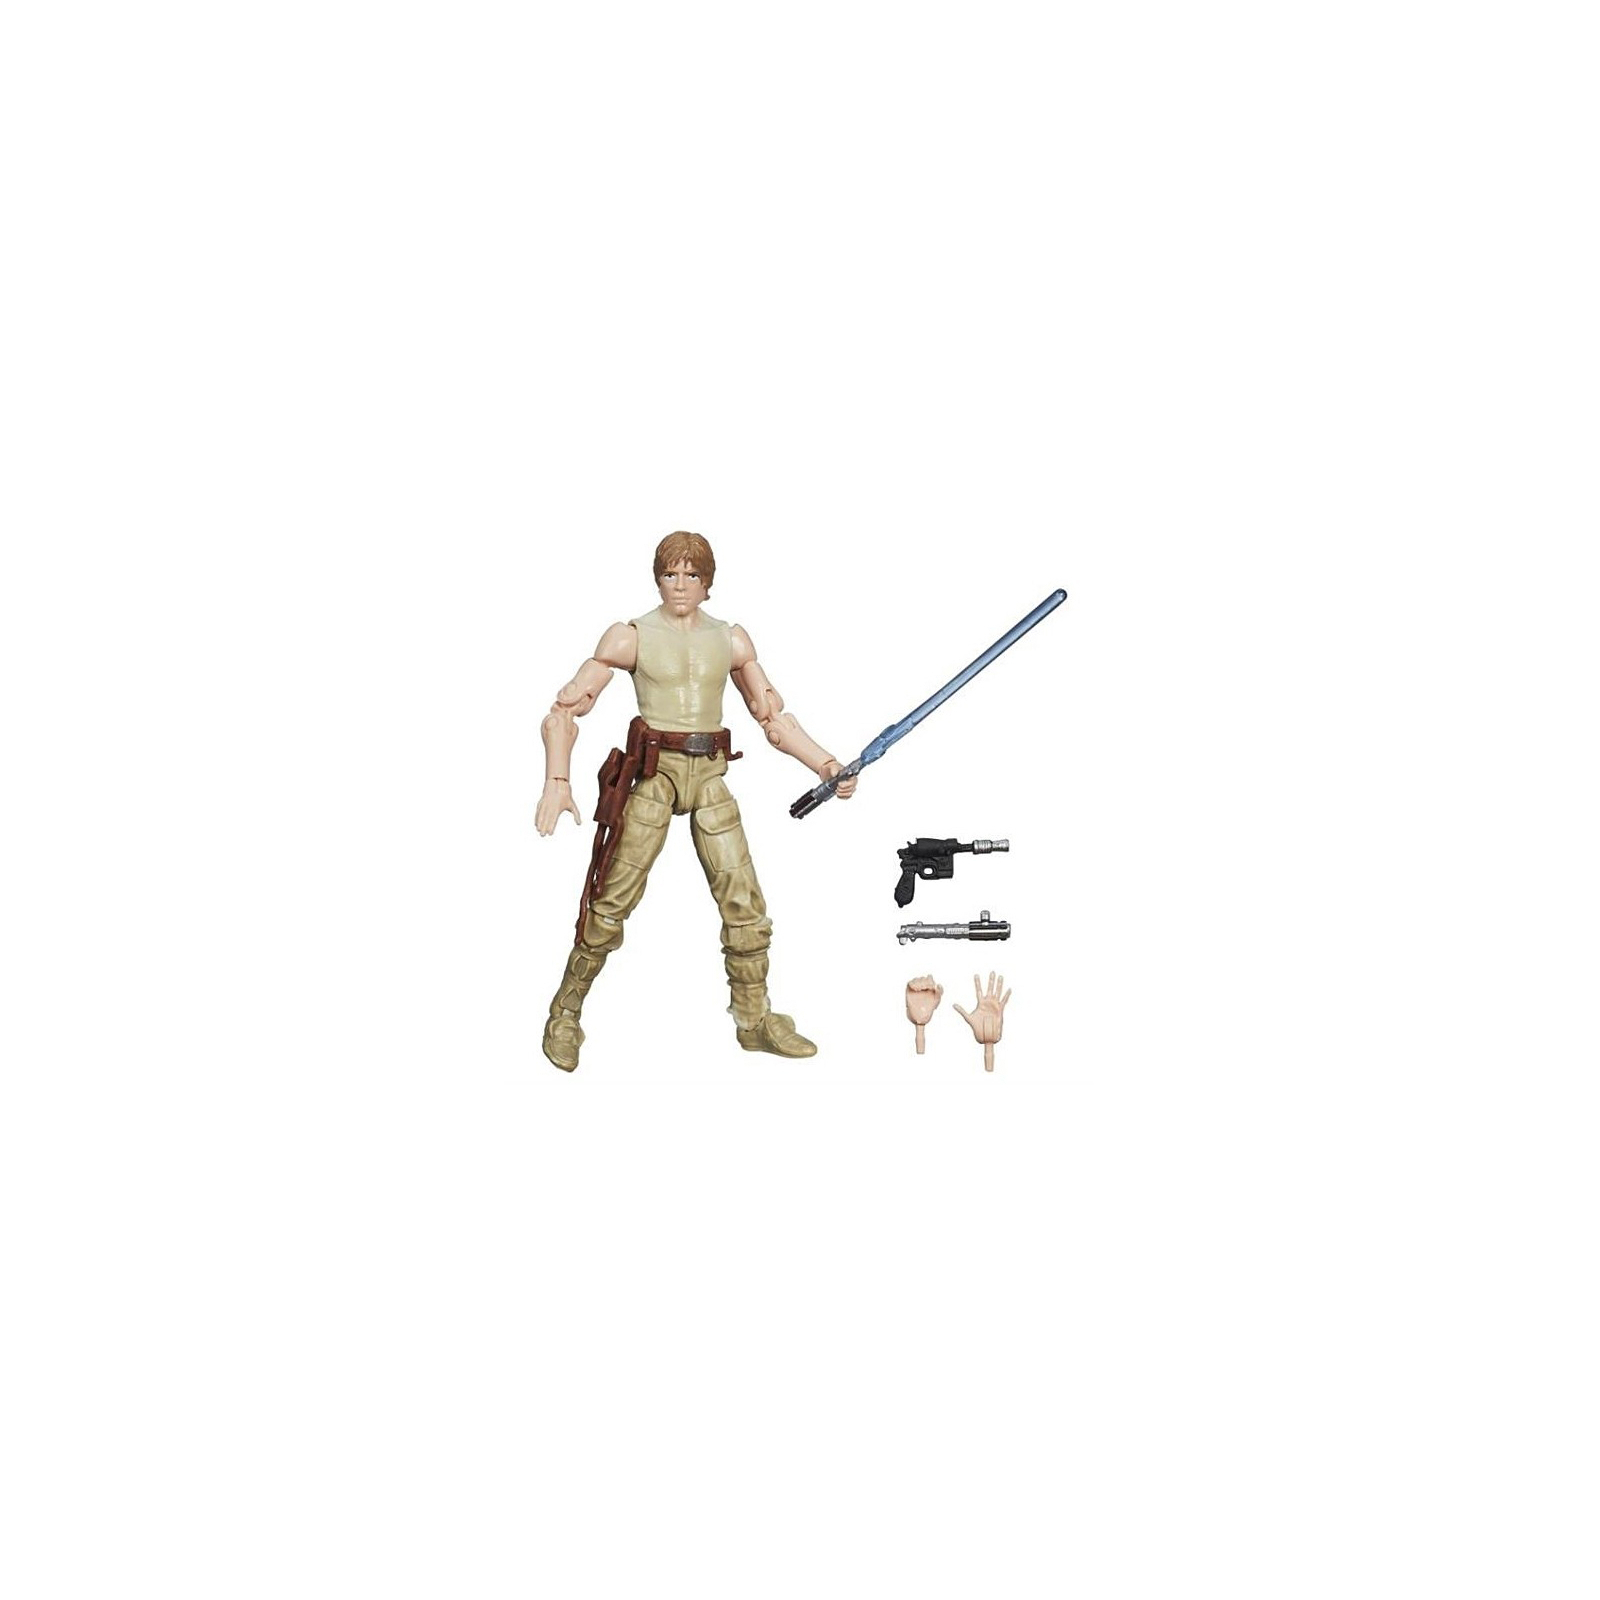 Фигурка Hasbro Люк Скайвокер Звездные войны (A5077E50) изображение 2